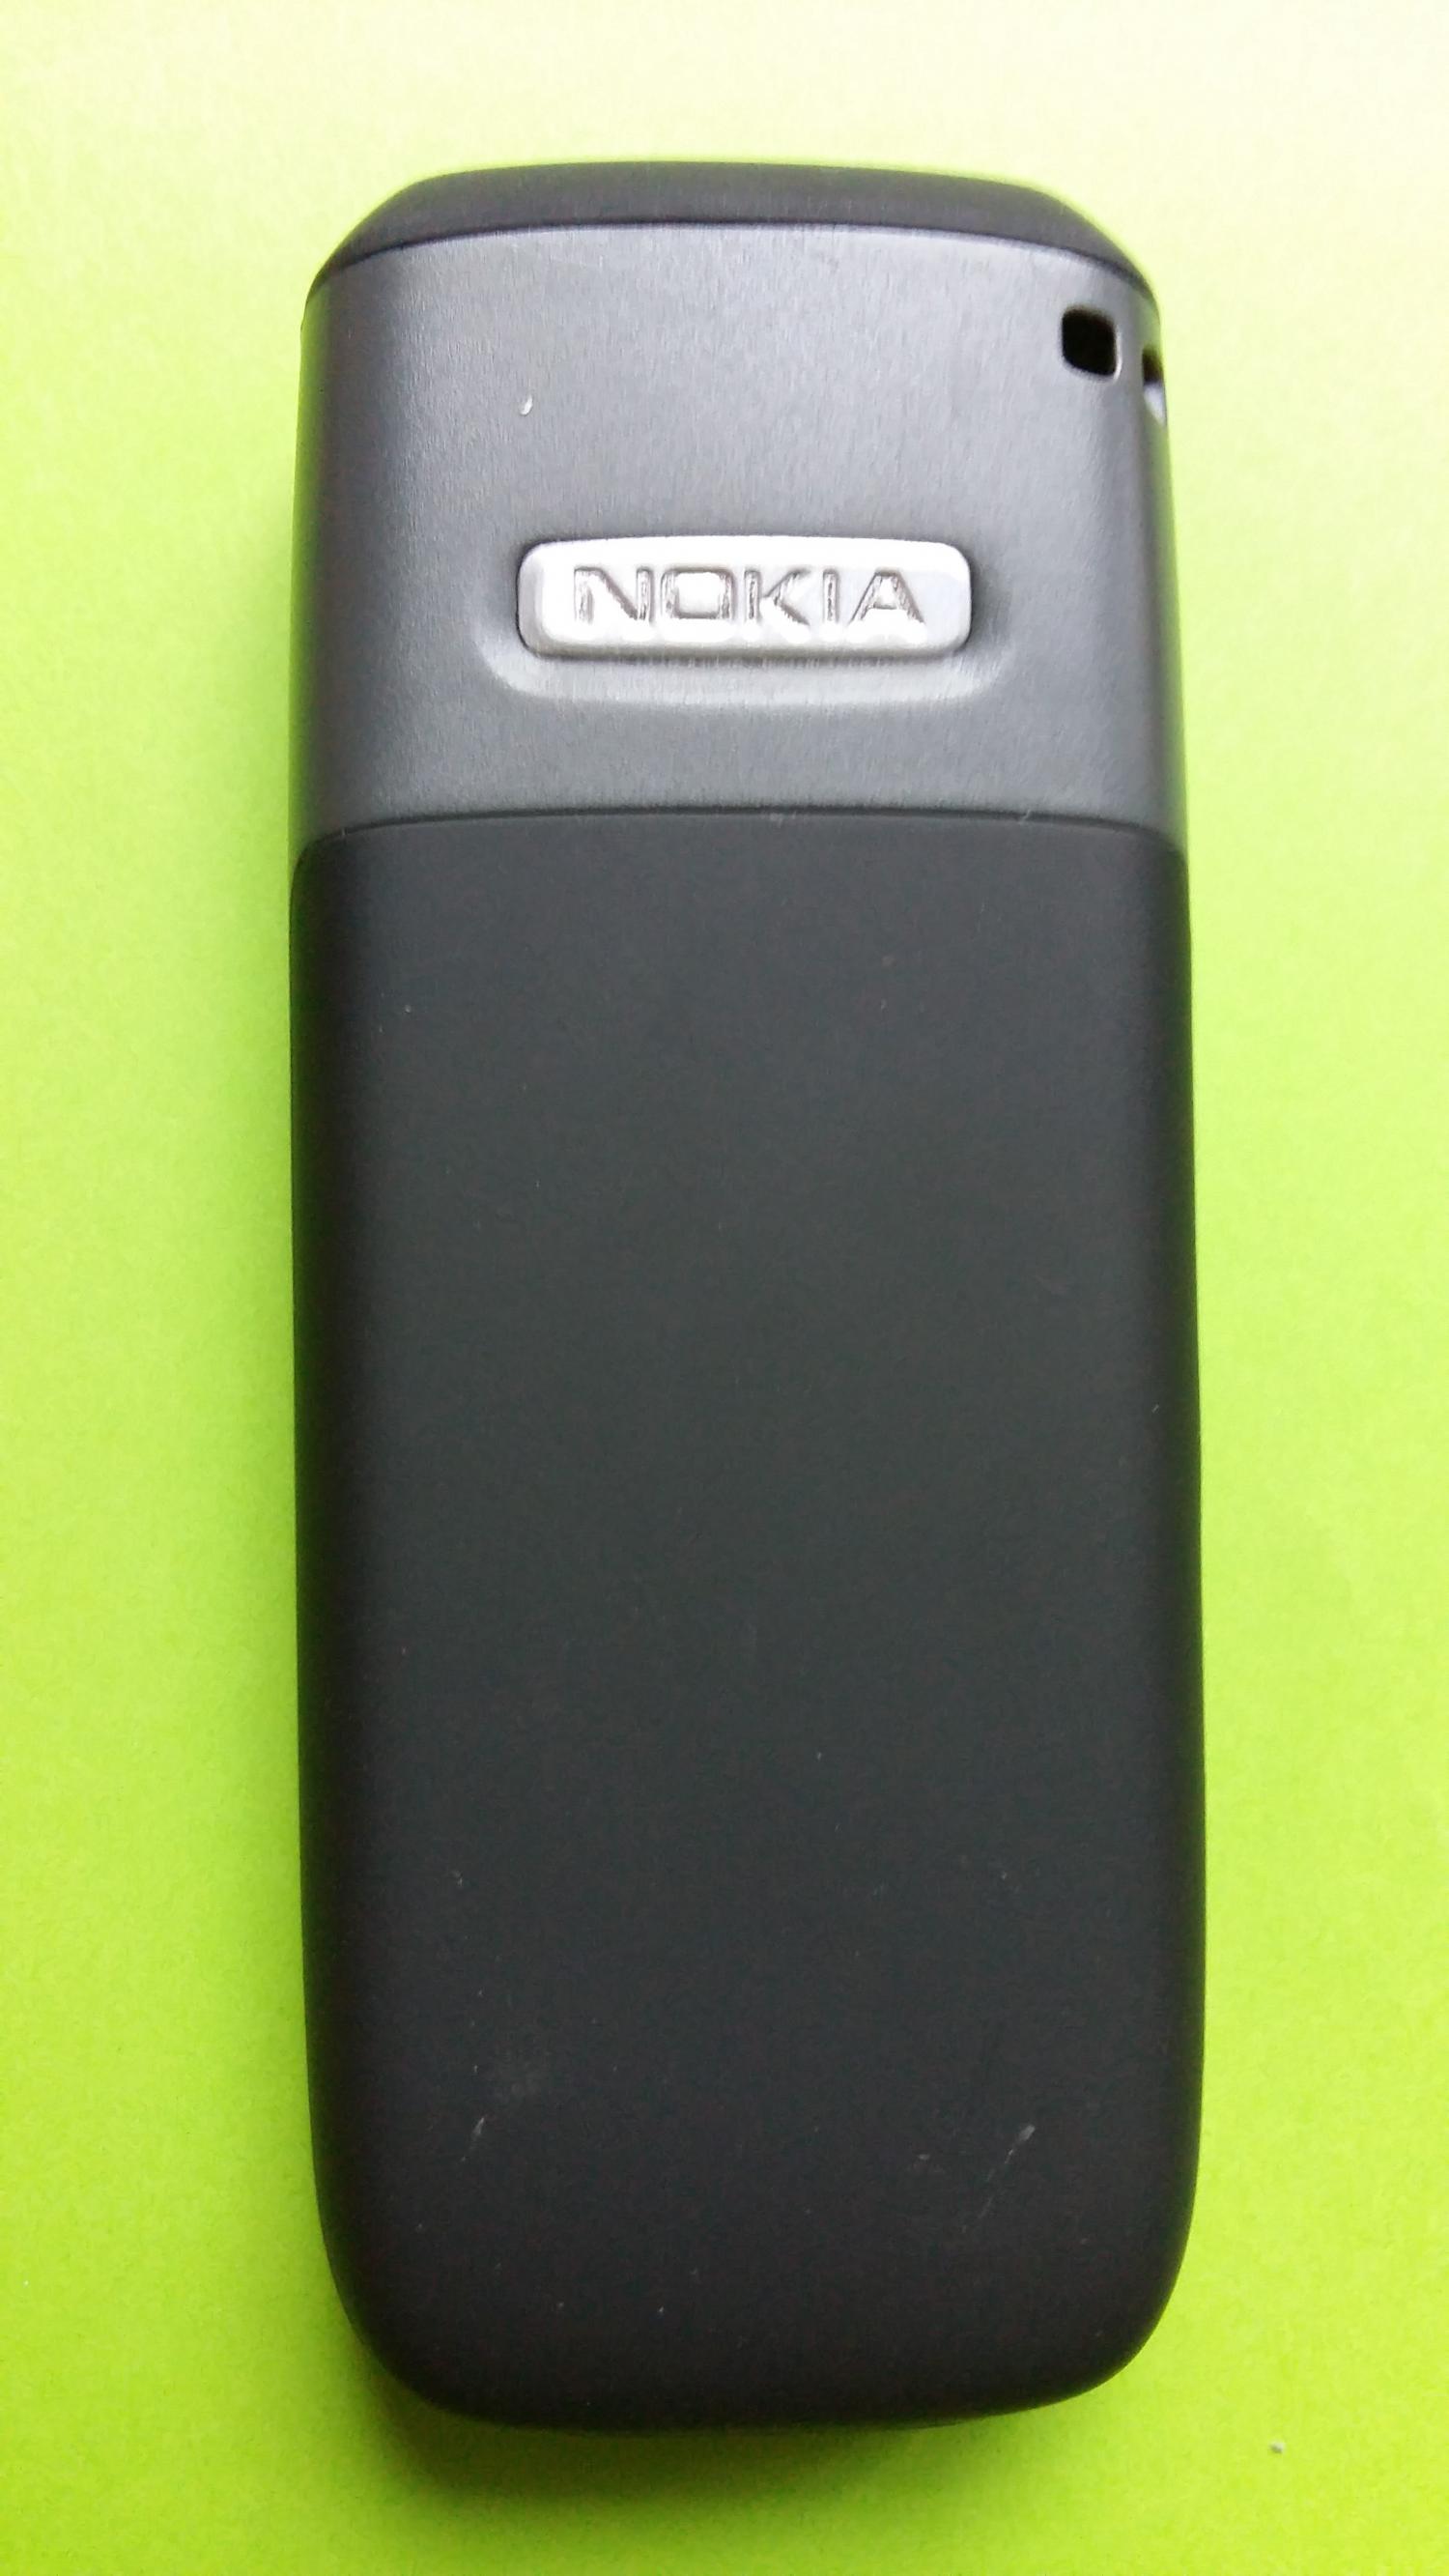 image-7331217-Nokia 2610 (2)2.jpg